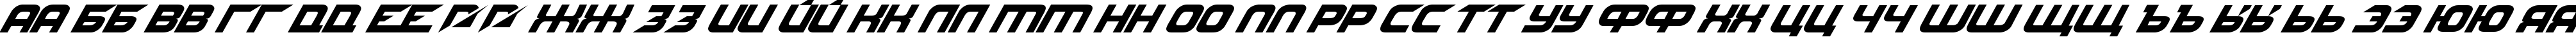 Пример написания русского алфавита шрифтом NFS font